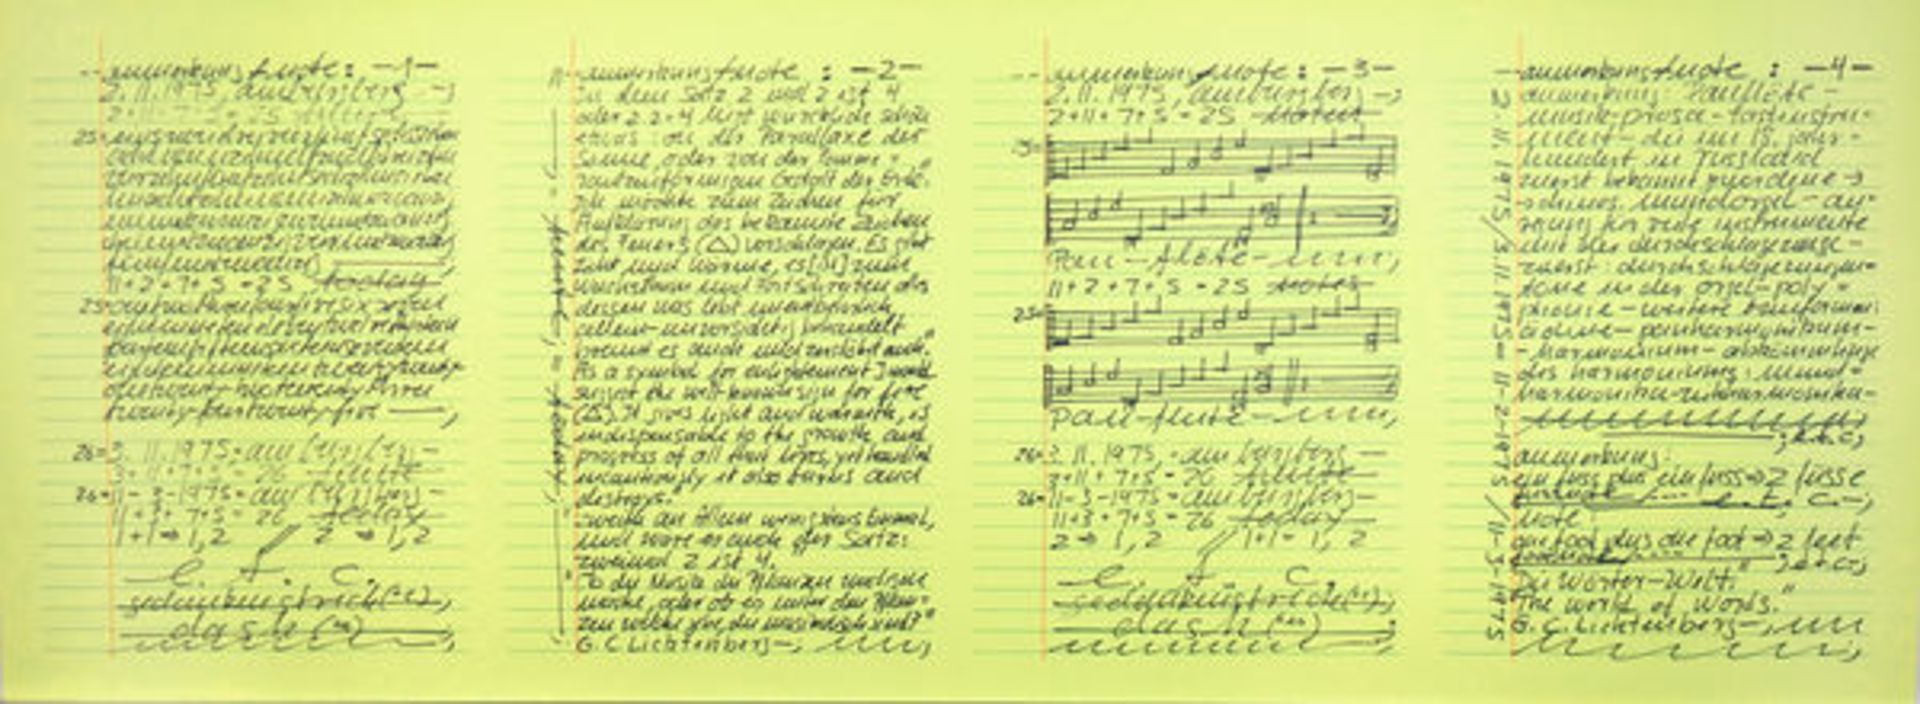 Darboven, Hanne 3 Blatt Offsetdrucke auf gelbem Papier Aufzeichnungen 25.3. 1975 / Aufzeichnungen